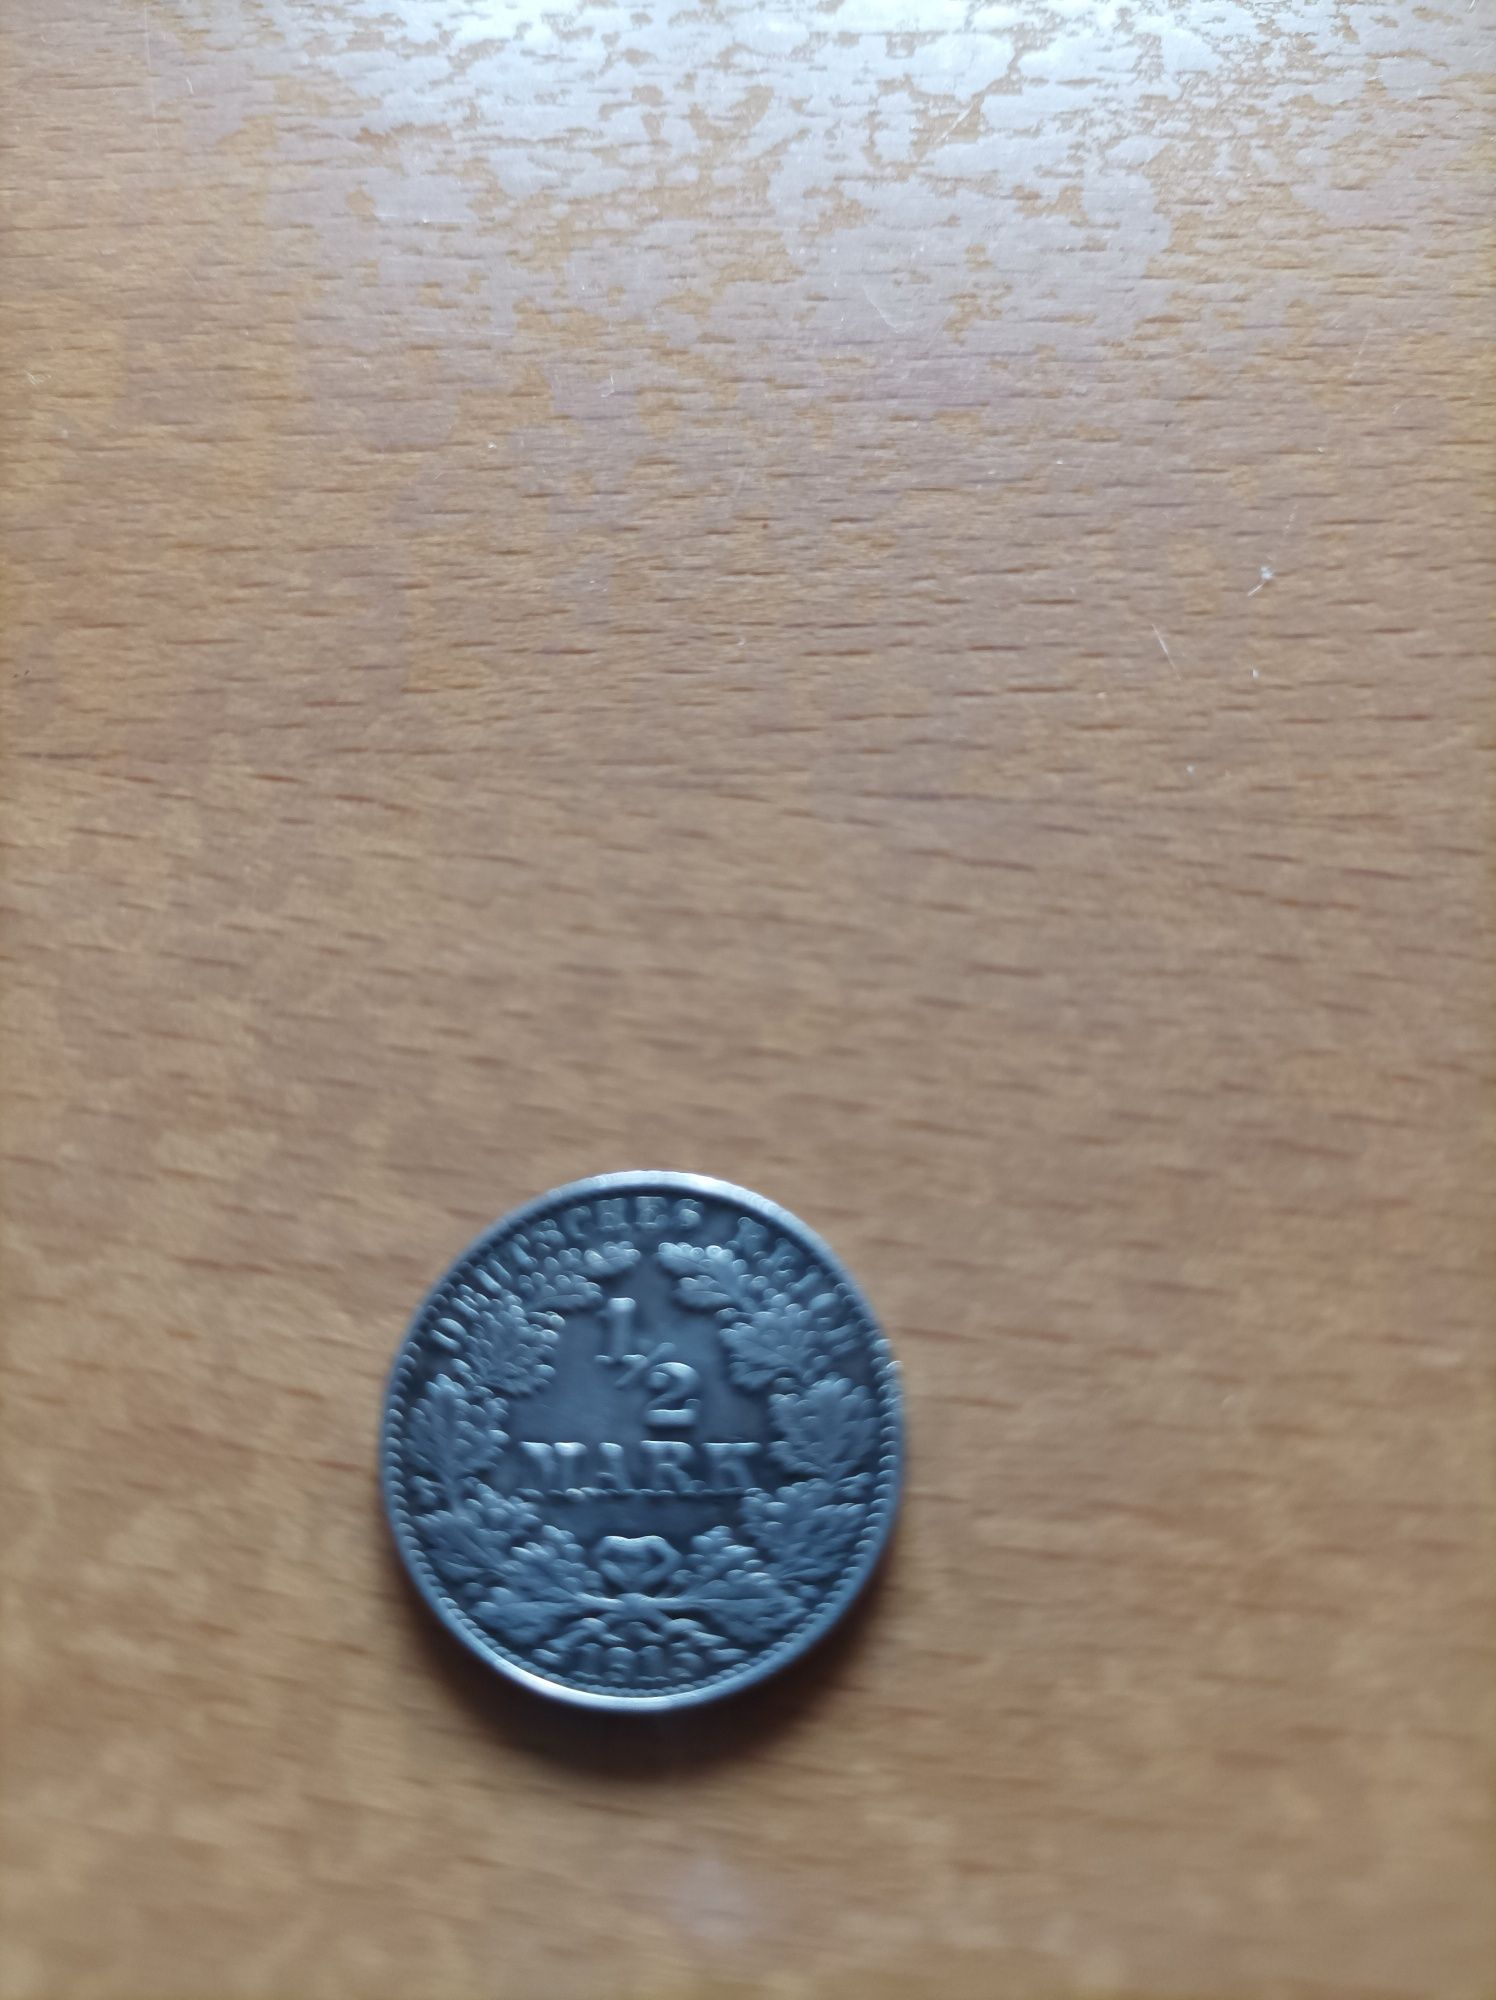 Stara moneta niemiecka